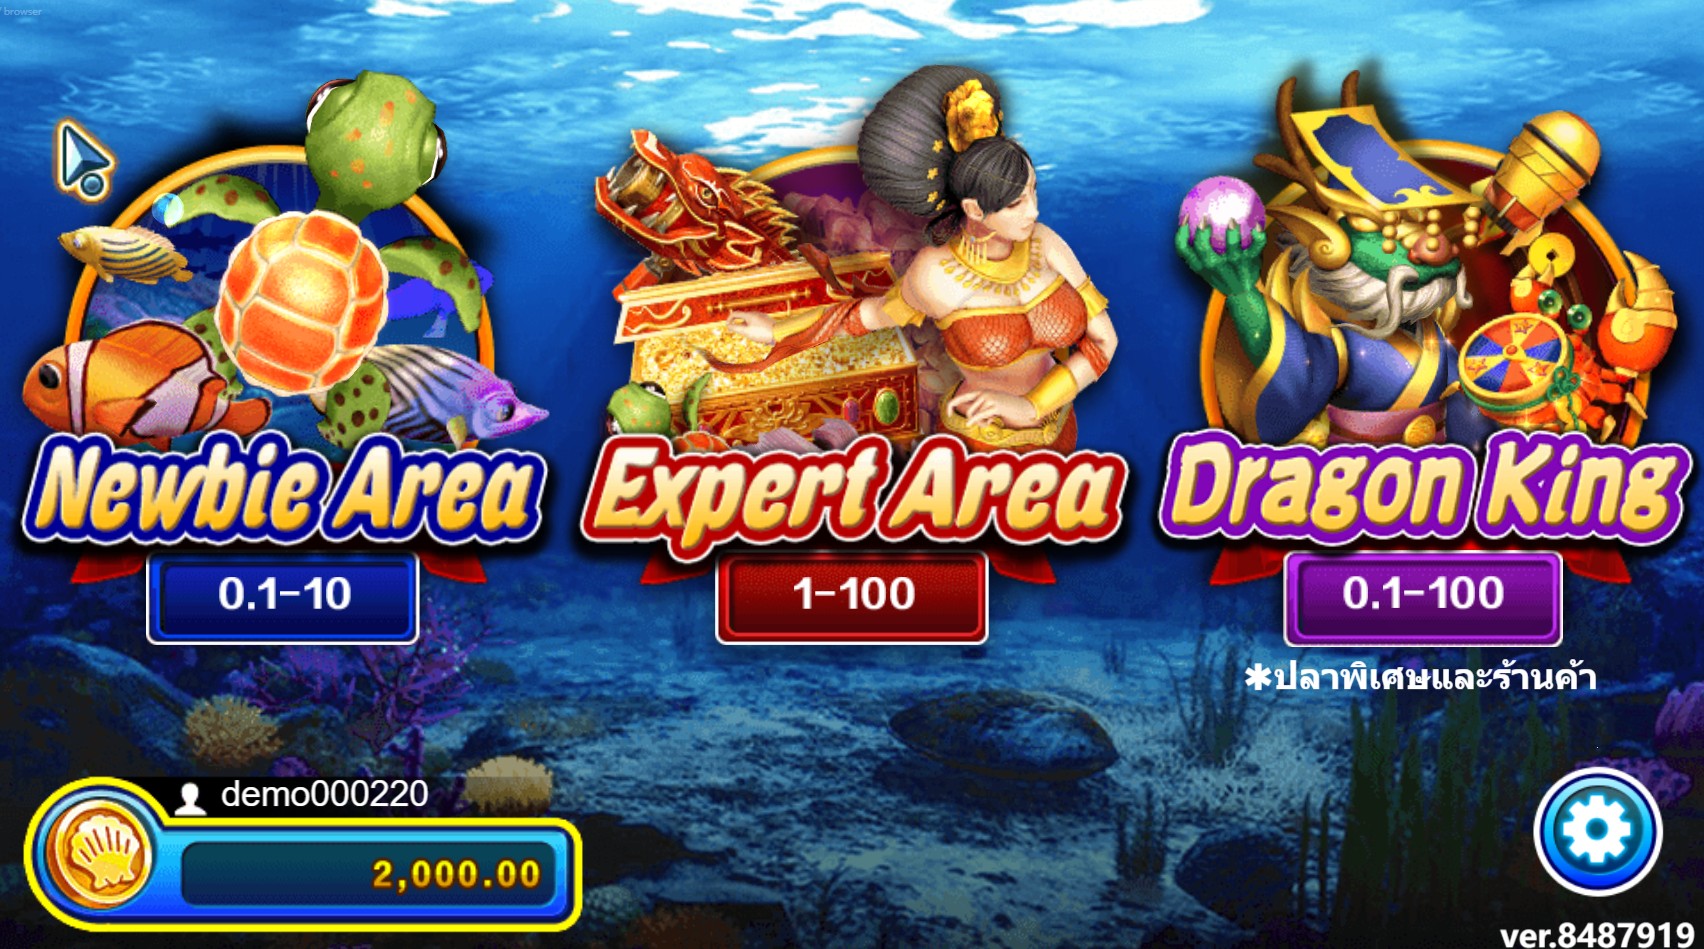 คุณสามารถตกปลาหาสมบัติที่เว็บไซต์ บ่อน ออนไลน์ ด้วย Dragon Fishing ได้หรือไม่?